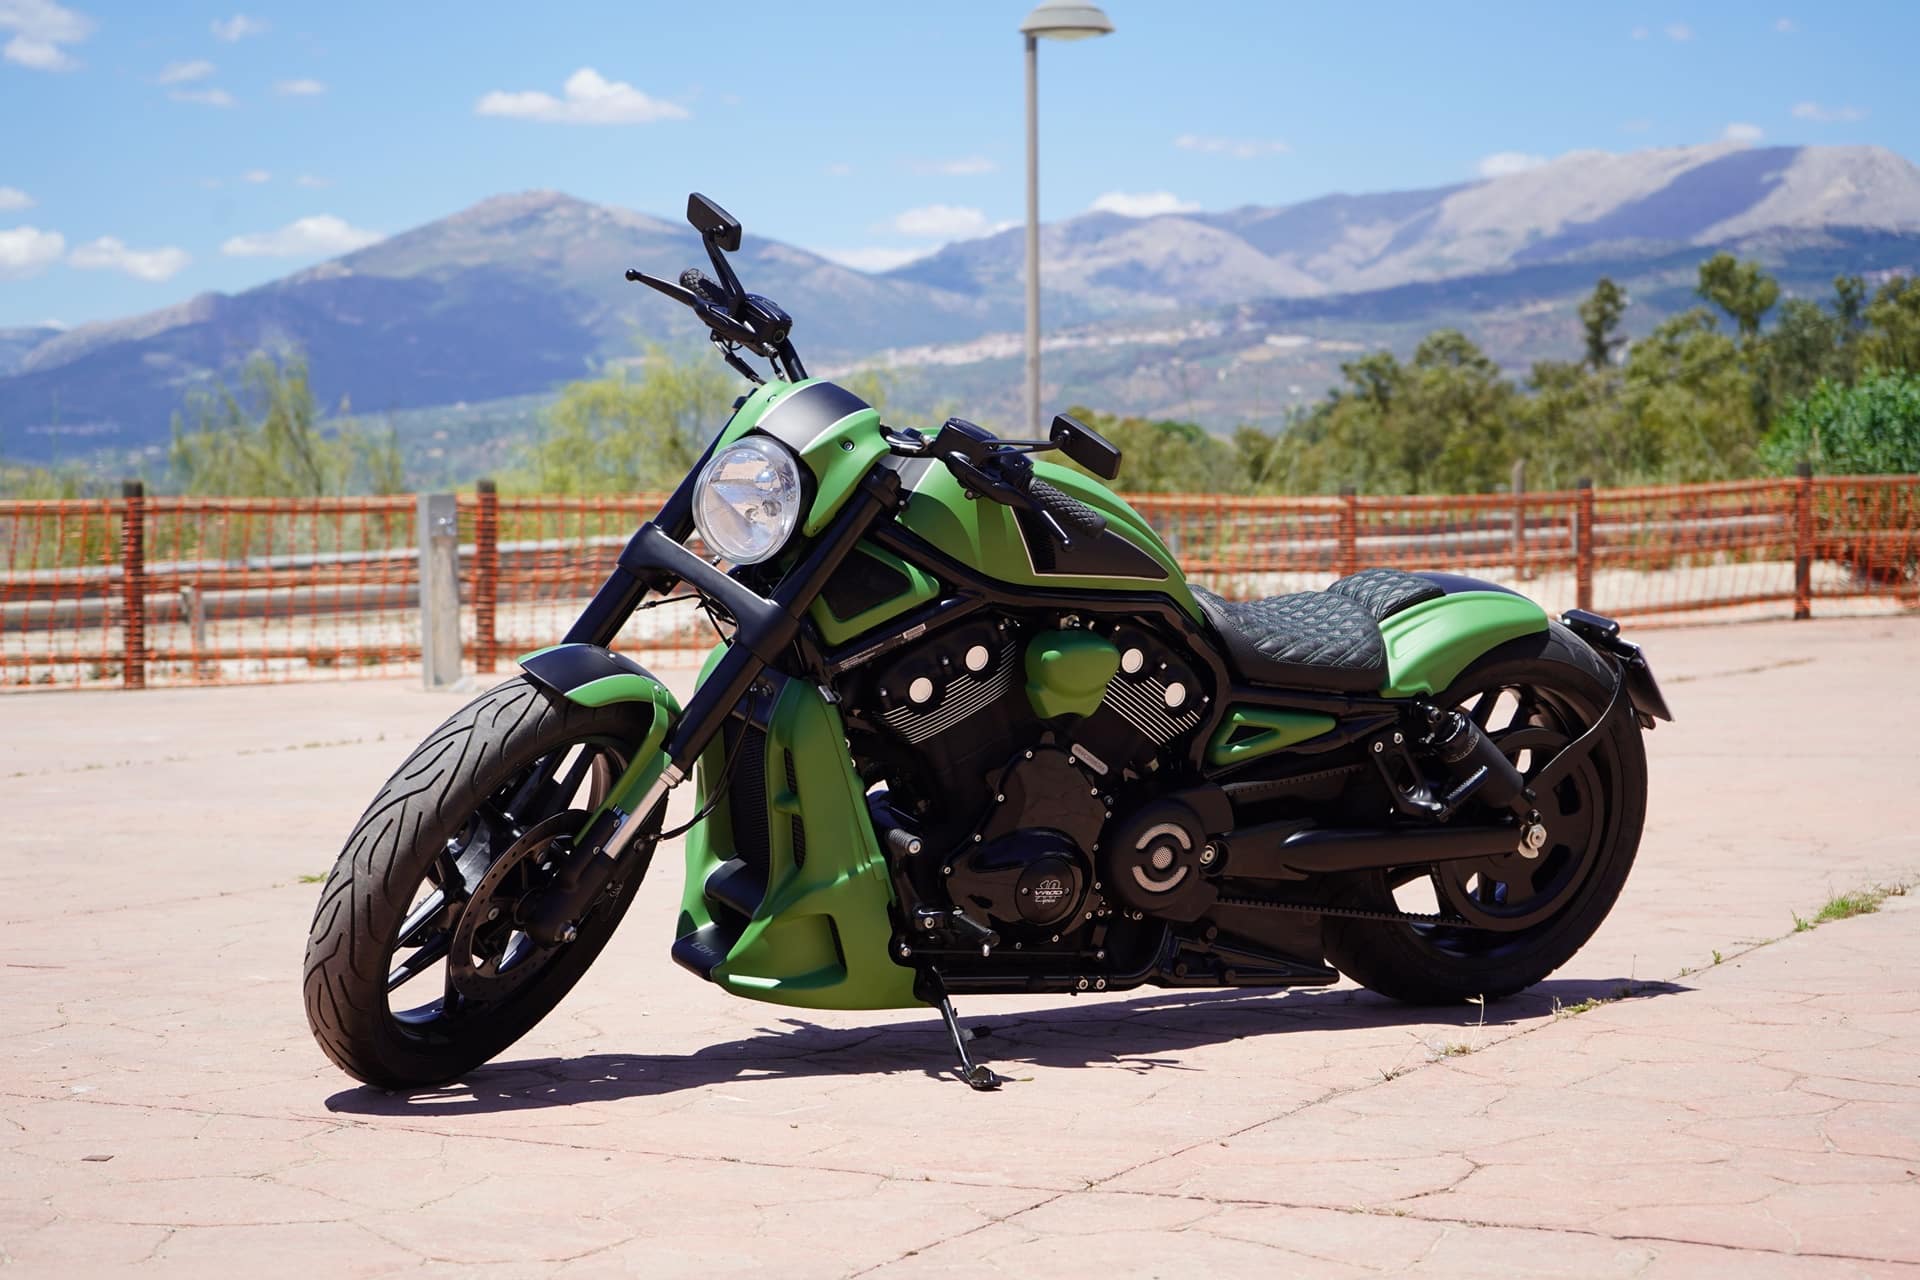 Harley-Davidson VROD 260 BG: Una moto única para alguien muy especial